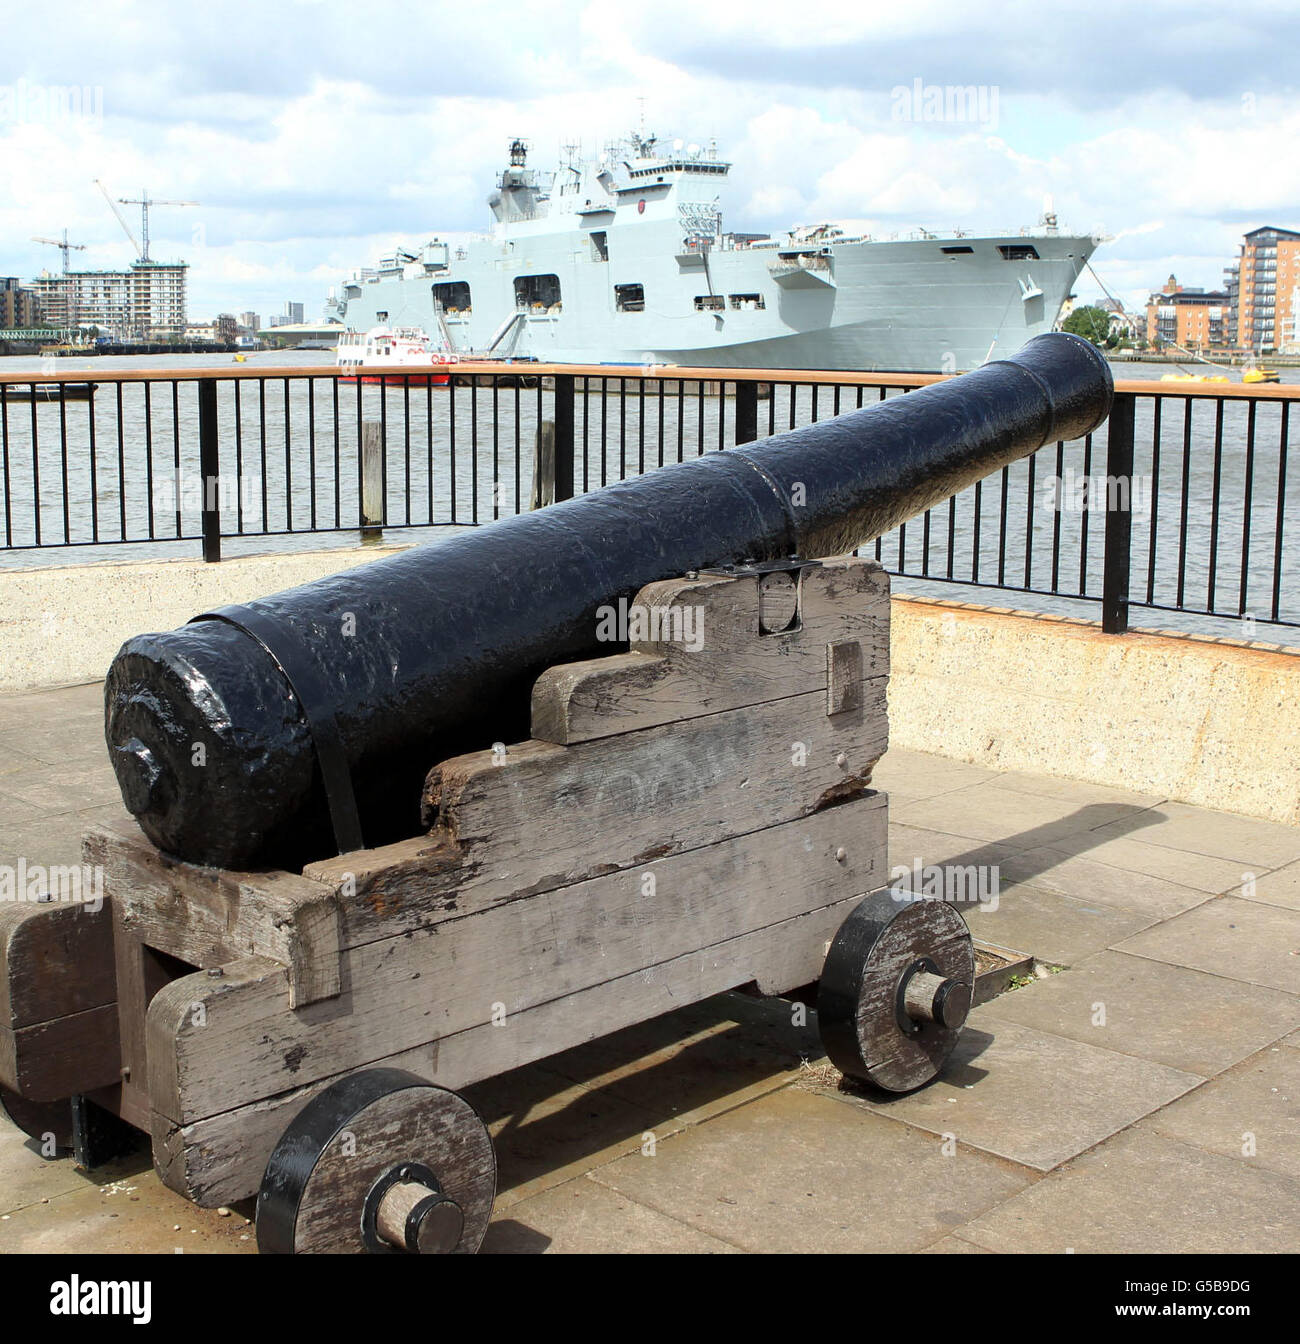 Le navire de la Marine royale HMS Ocean est amarré sur la Tamise à Greenwich dans le cadre de la sécurité des forces armées pour les Jeux Olympiques de Londres 2012. Banque D'Images